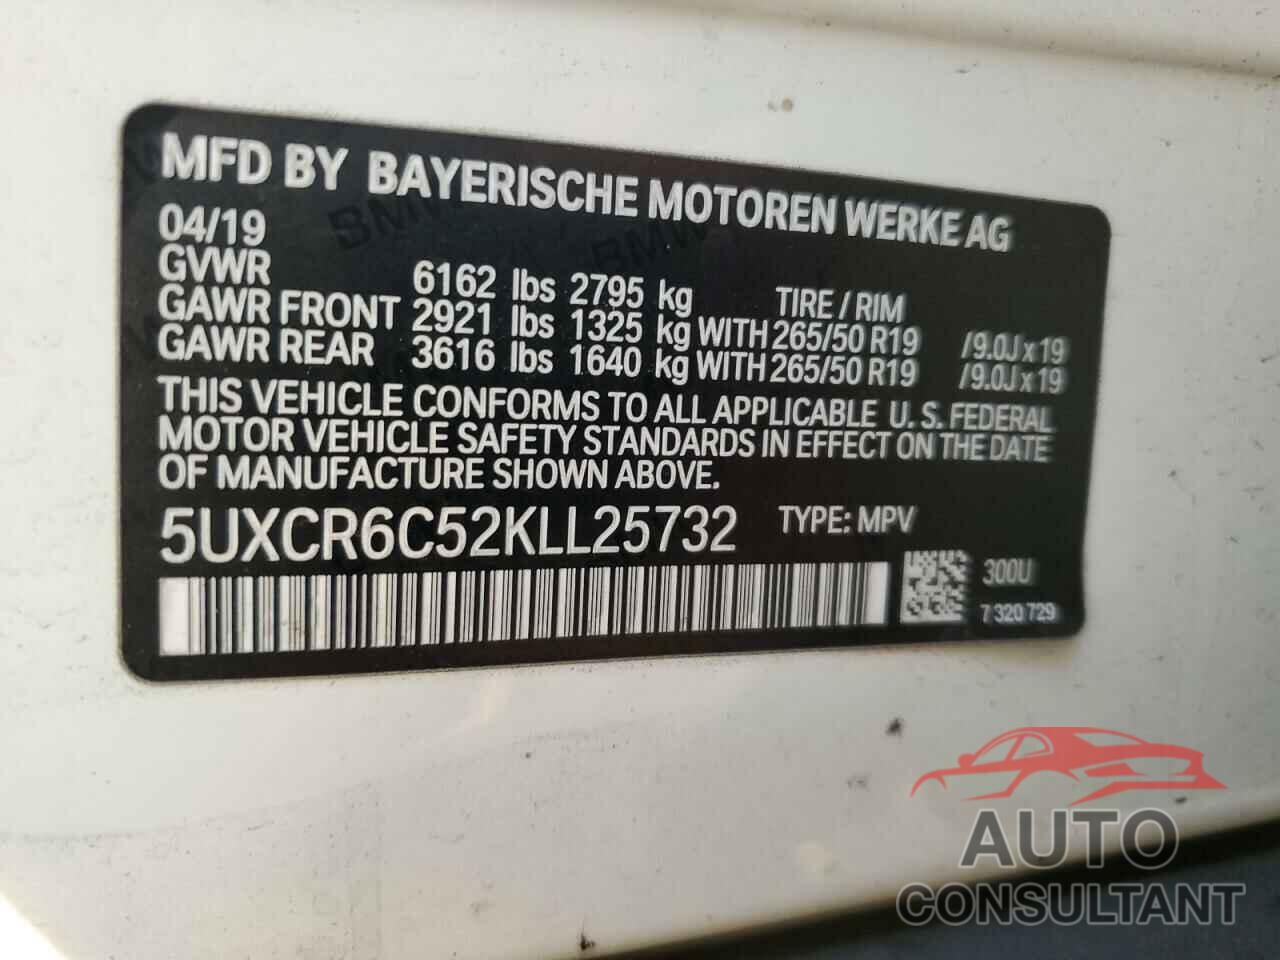 BMW X5 2019 - 5UXCR6C52KLL25732